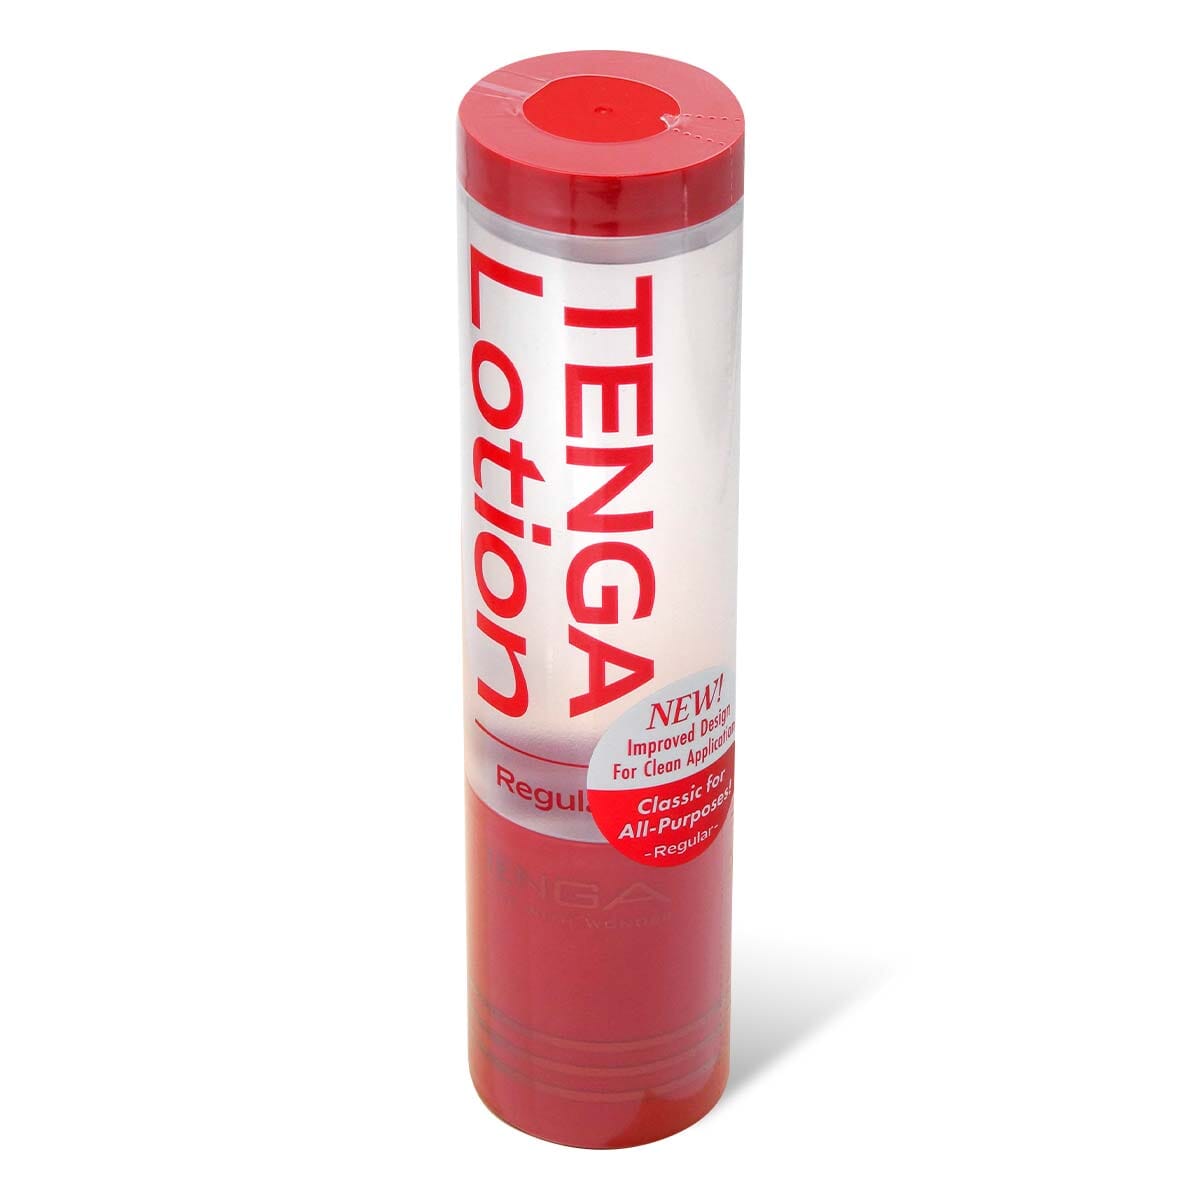 TENGA Hole Lotion Real 水性潤滑液 170 毫升 購買